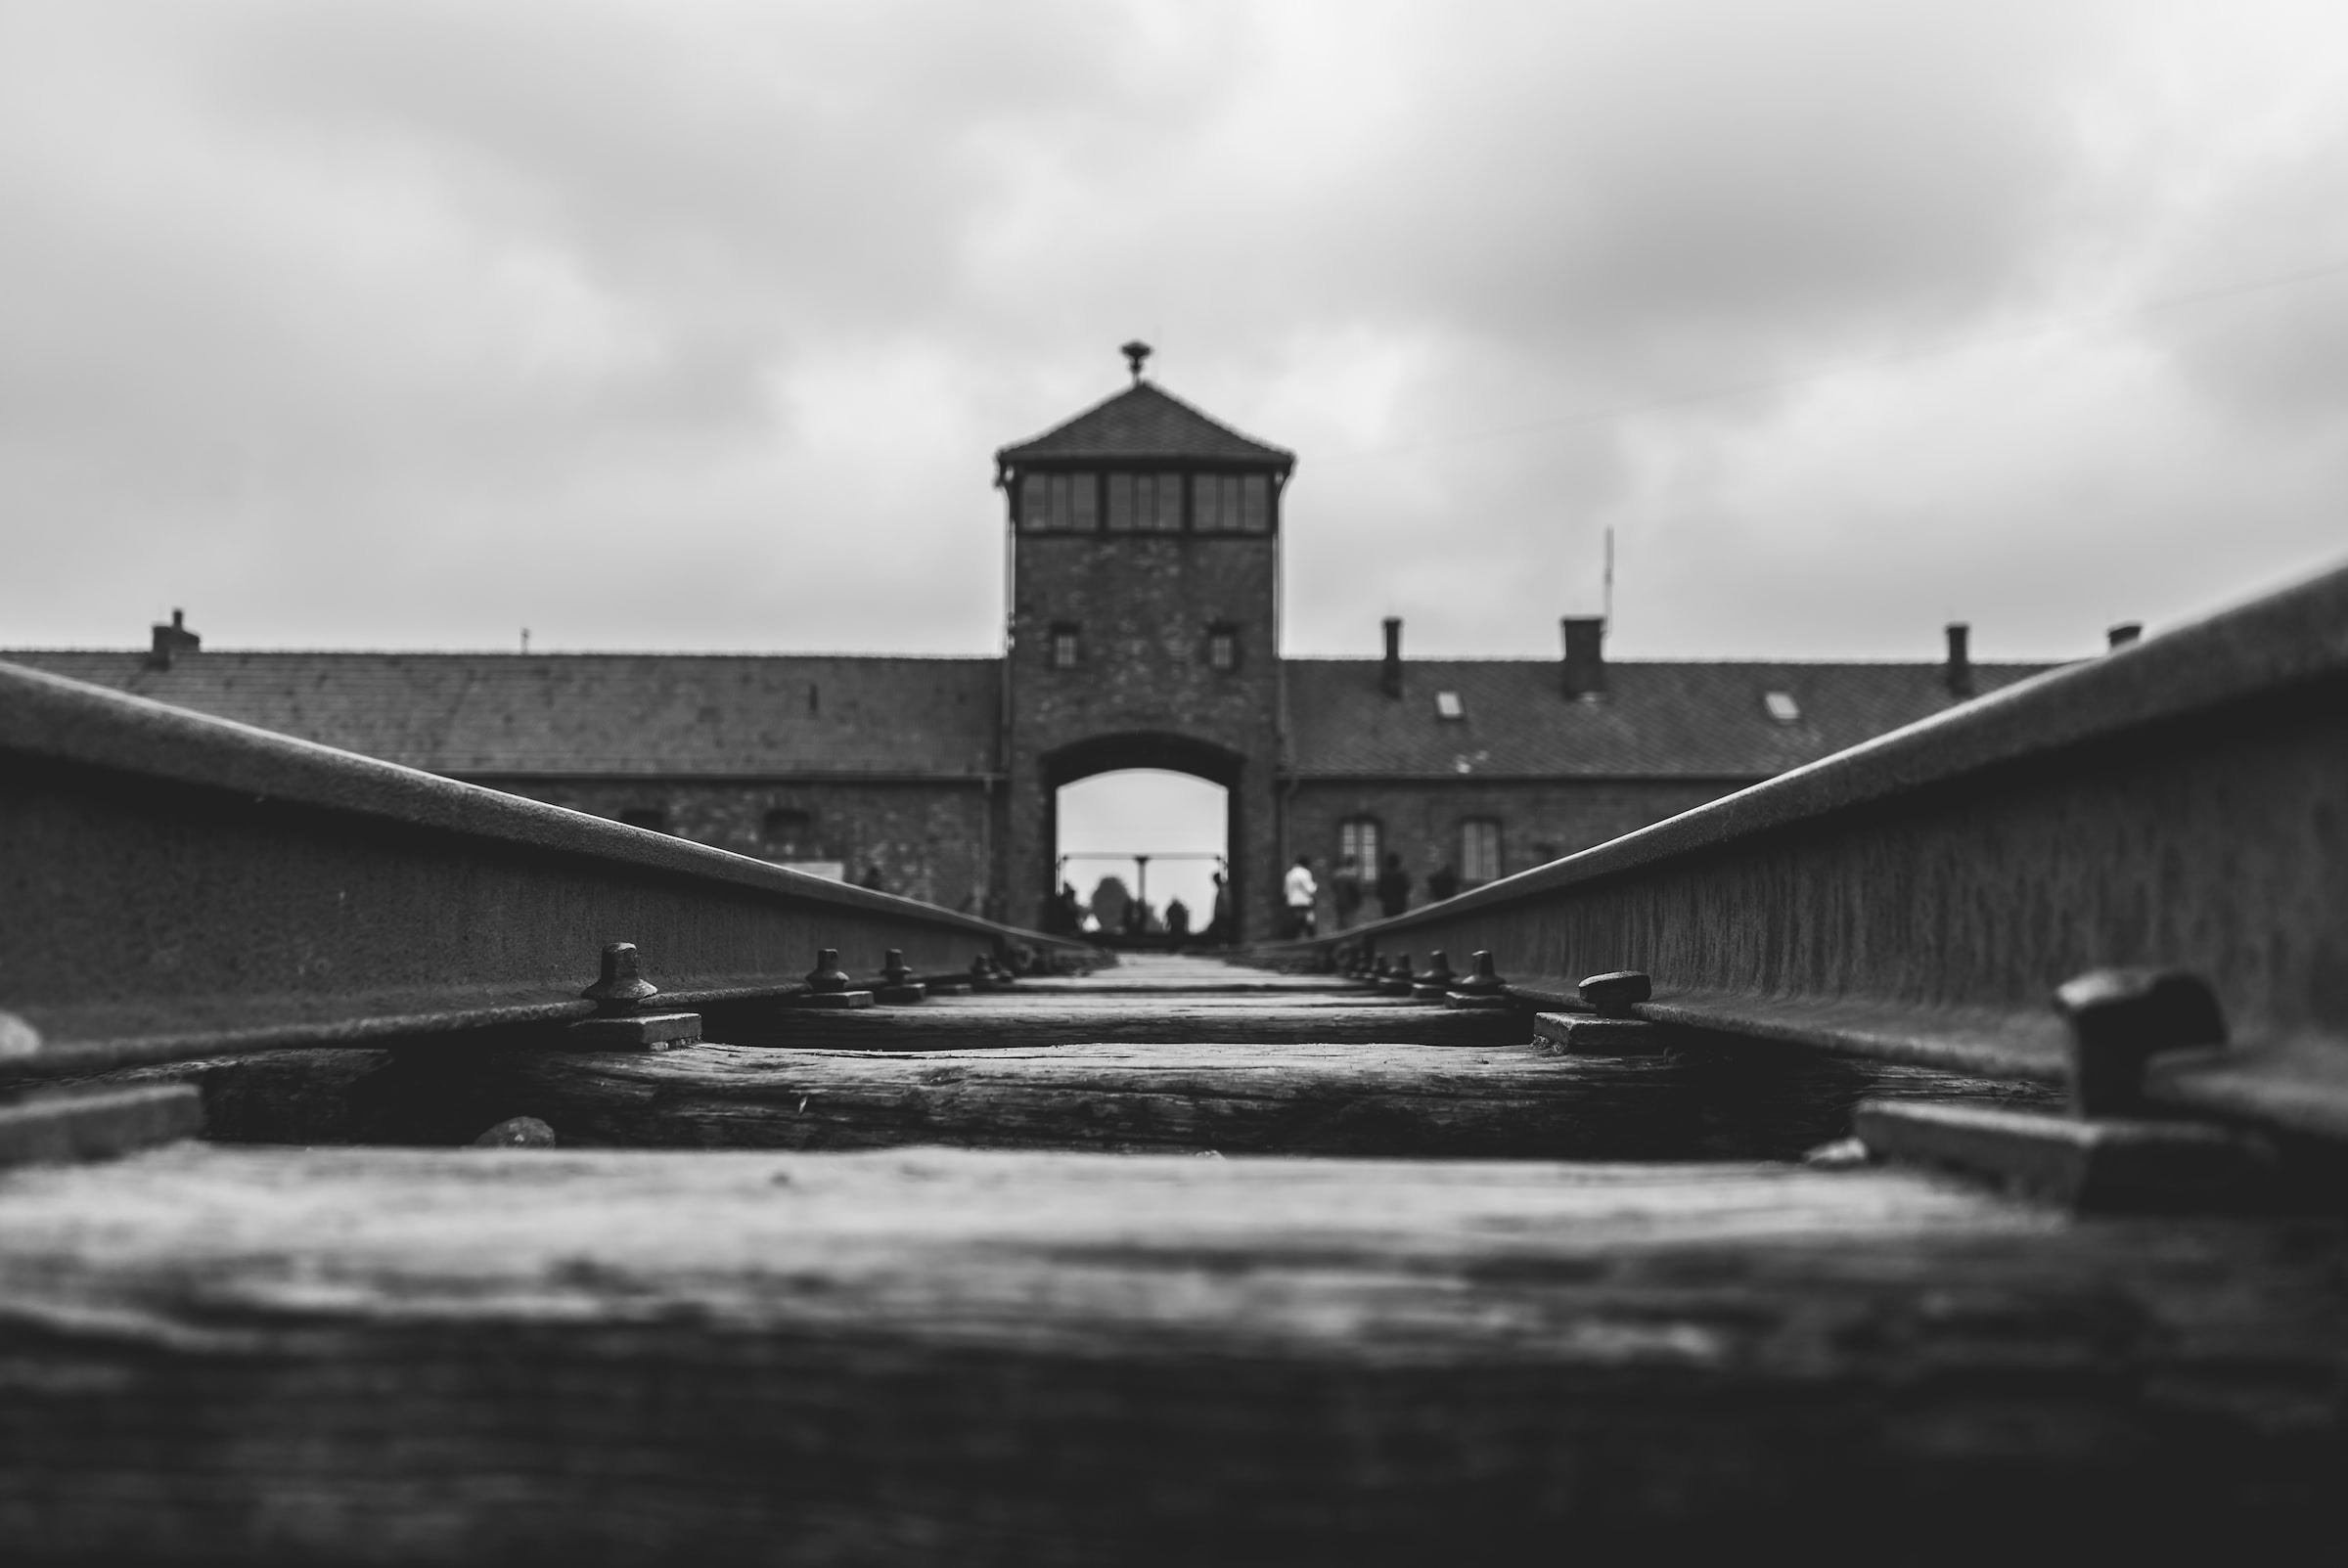 Brama wjazdowa i tory kolejowe prowadzące do obozu koncentracyjnego Auschwitz.